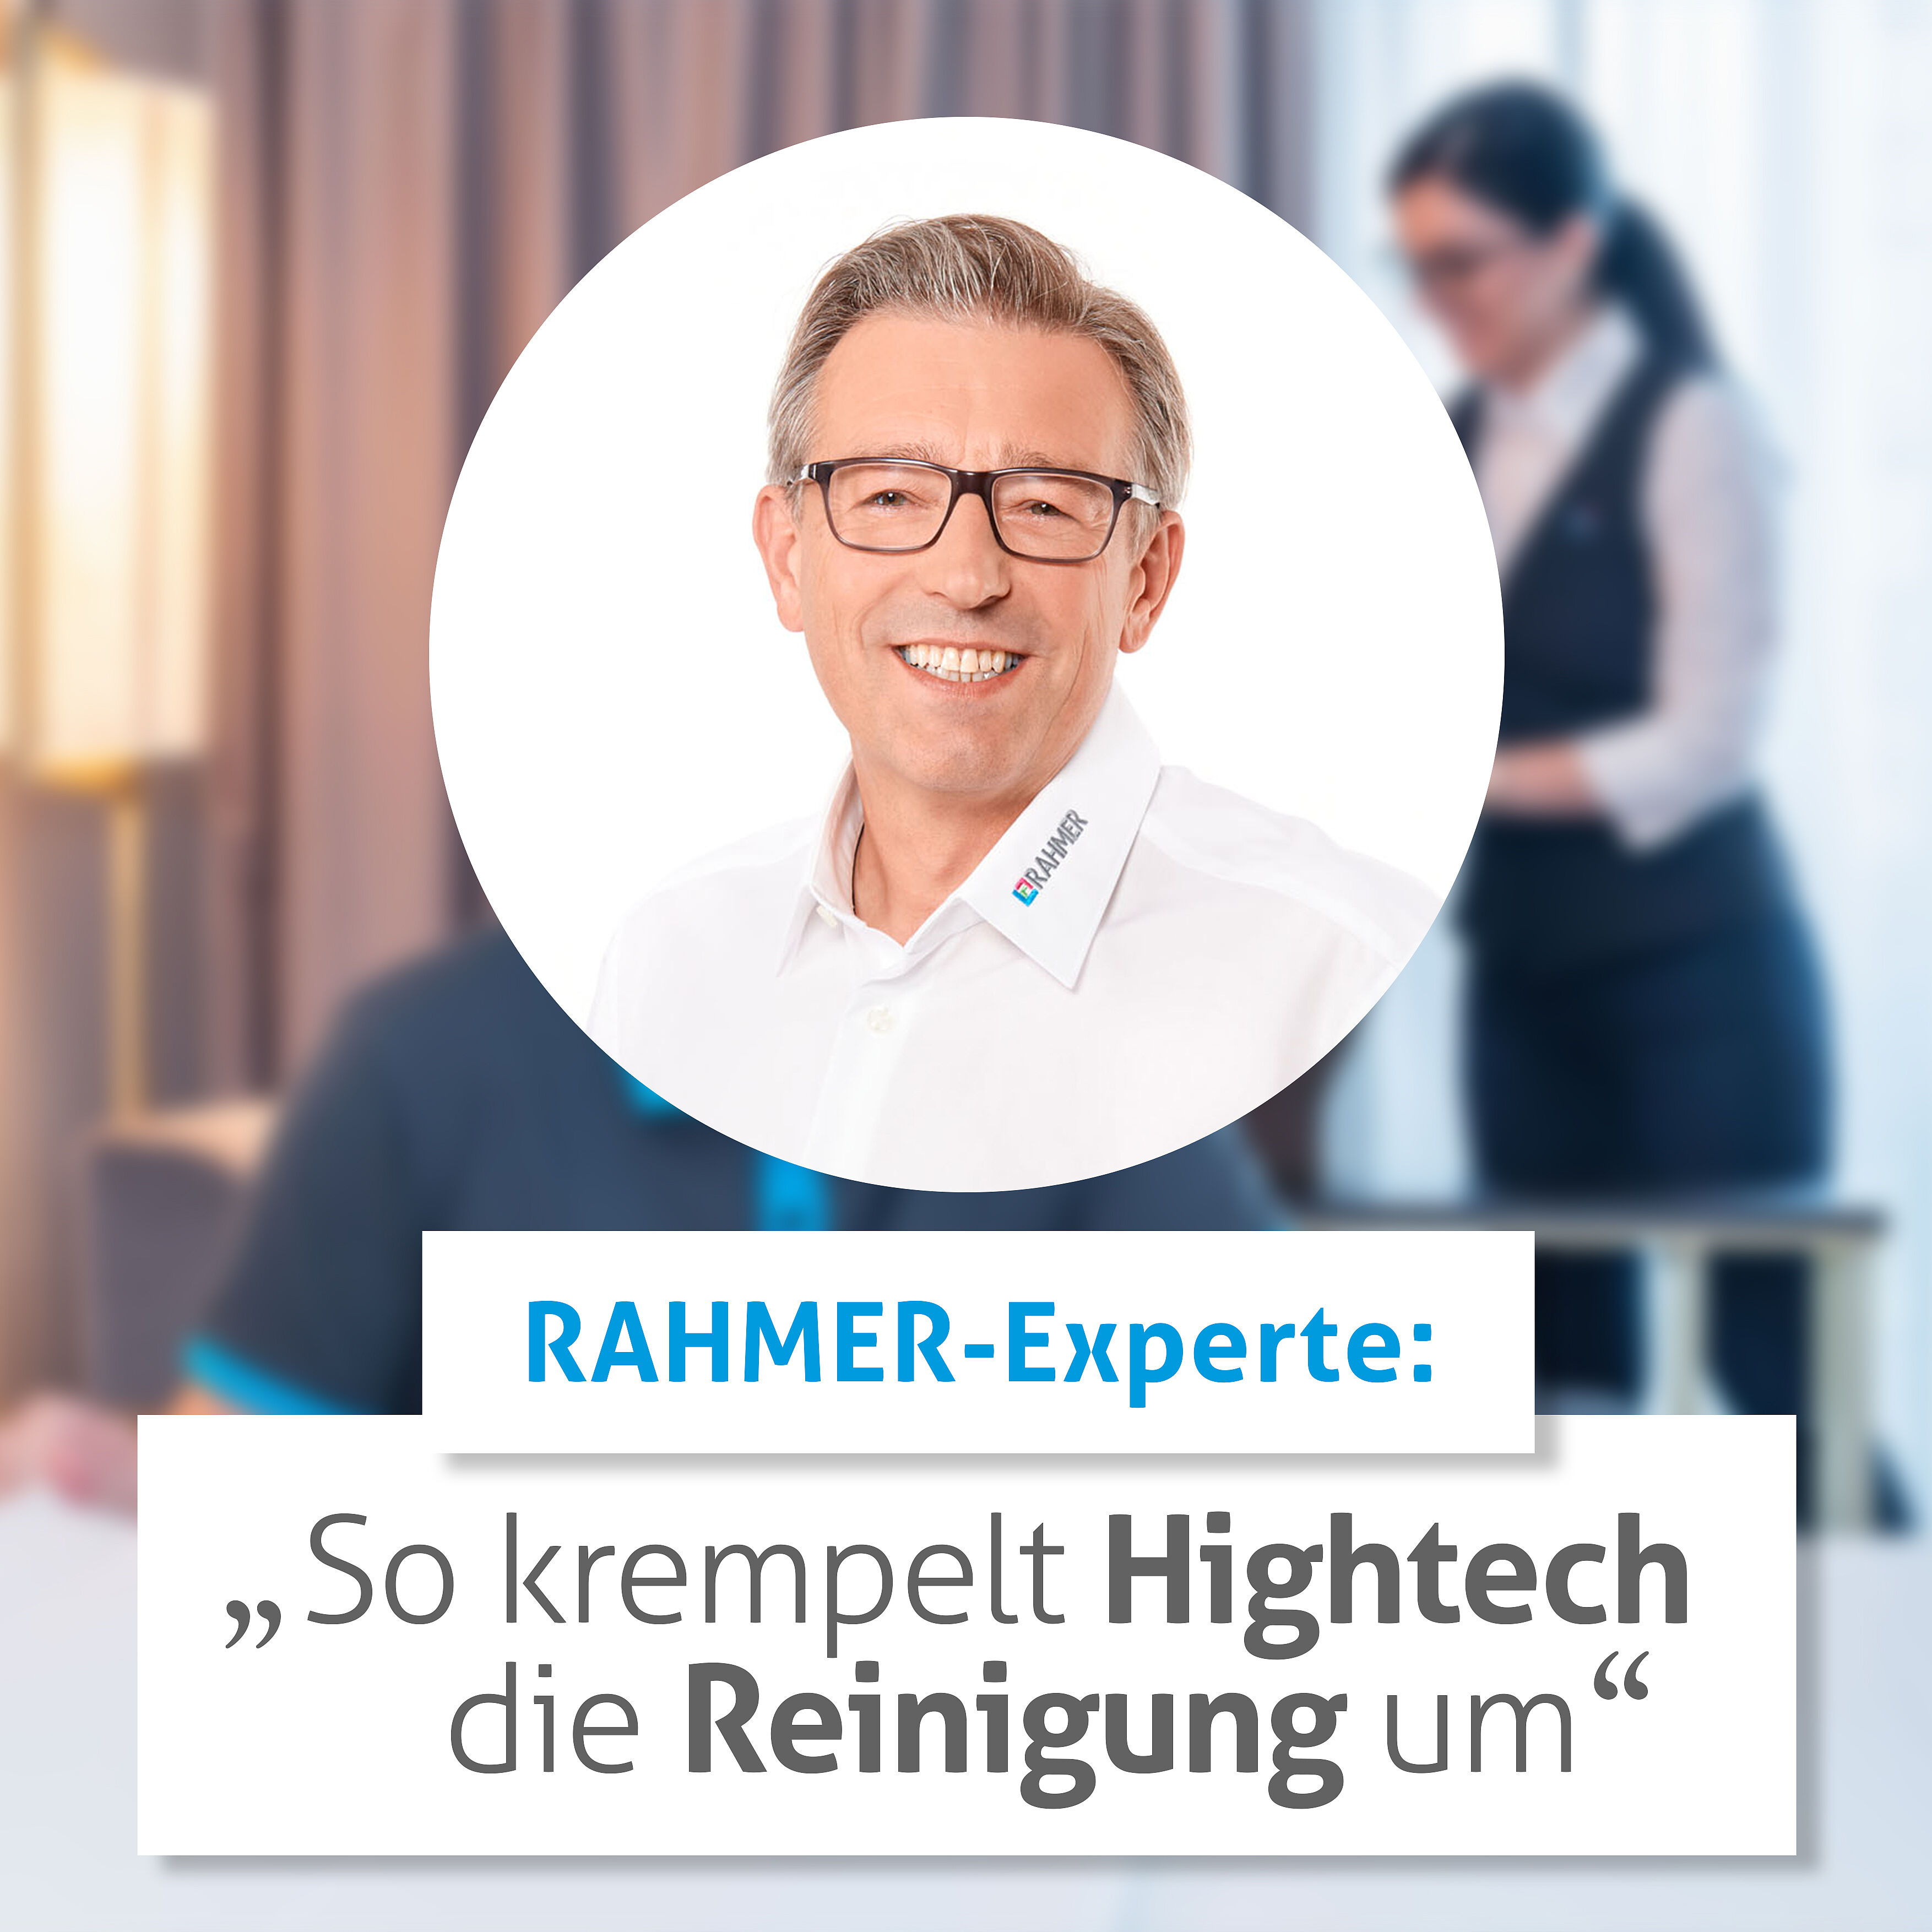 RAHMER-Experteninterview: So krempelt Hightech die Reinigung um